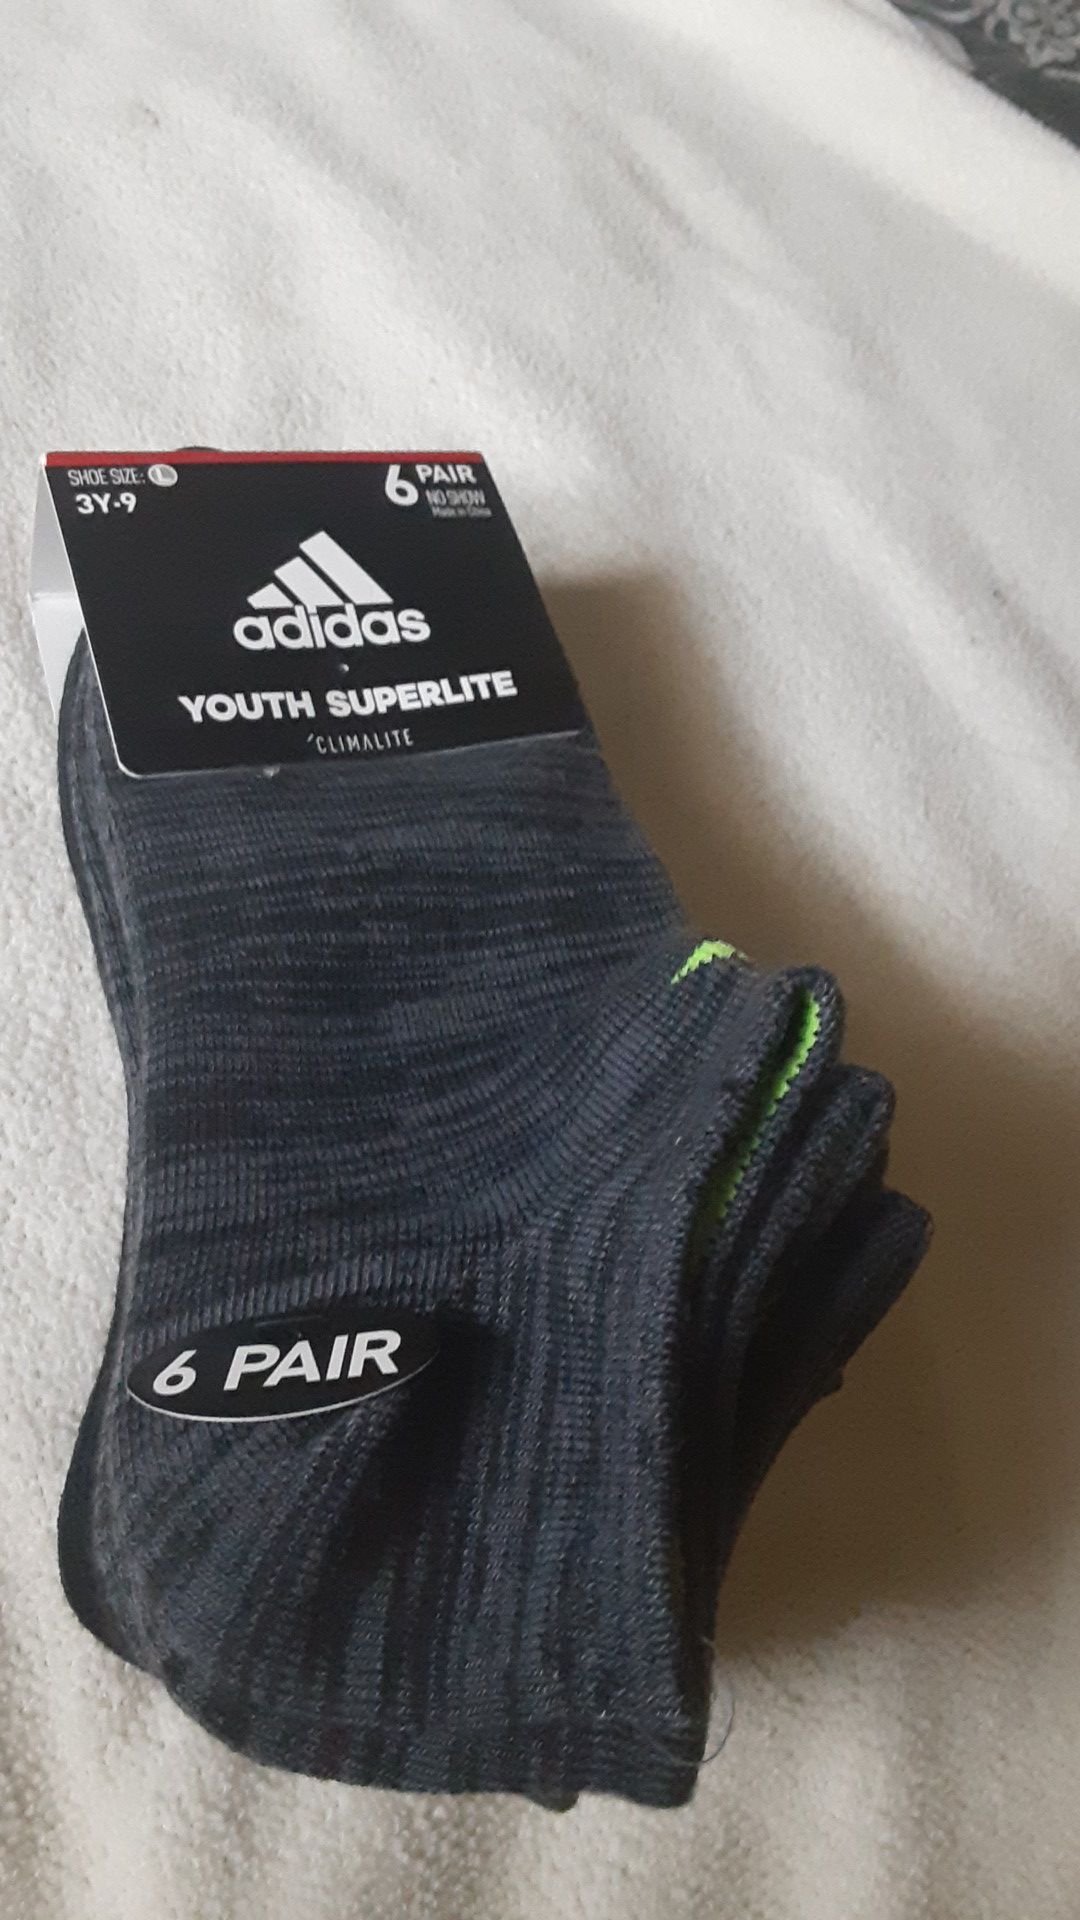 Youth Adidas socks 3y-9